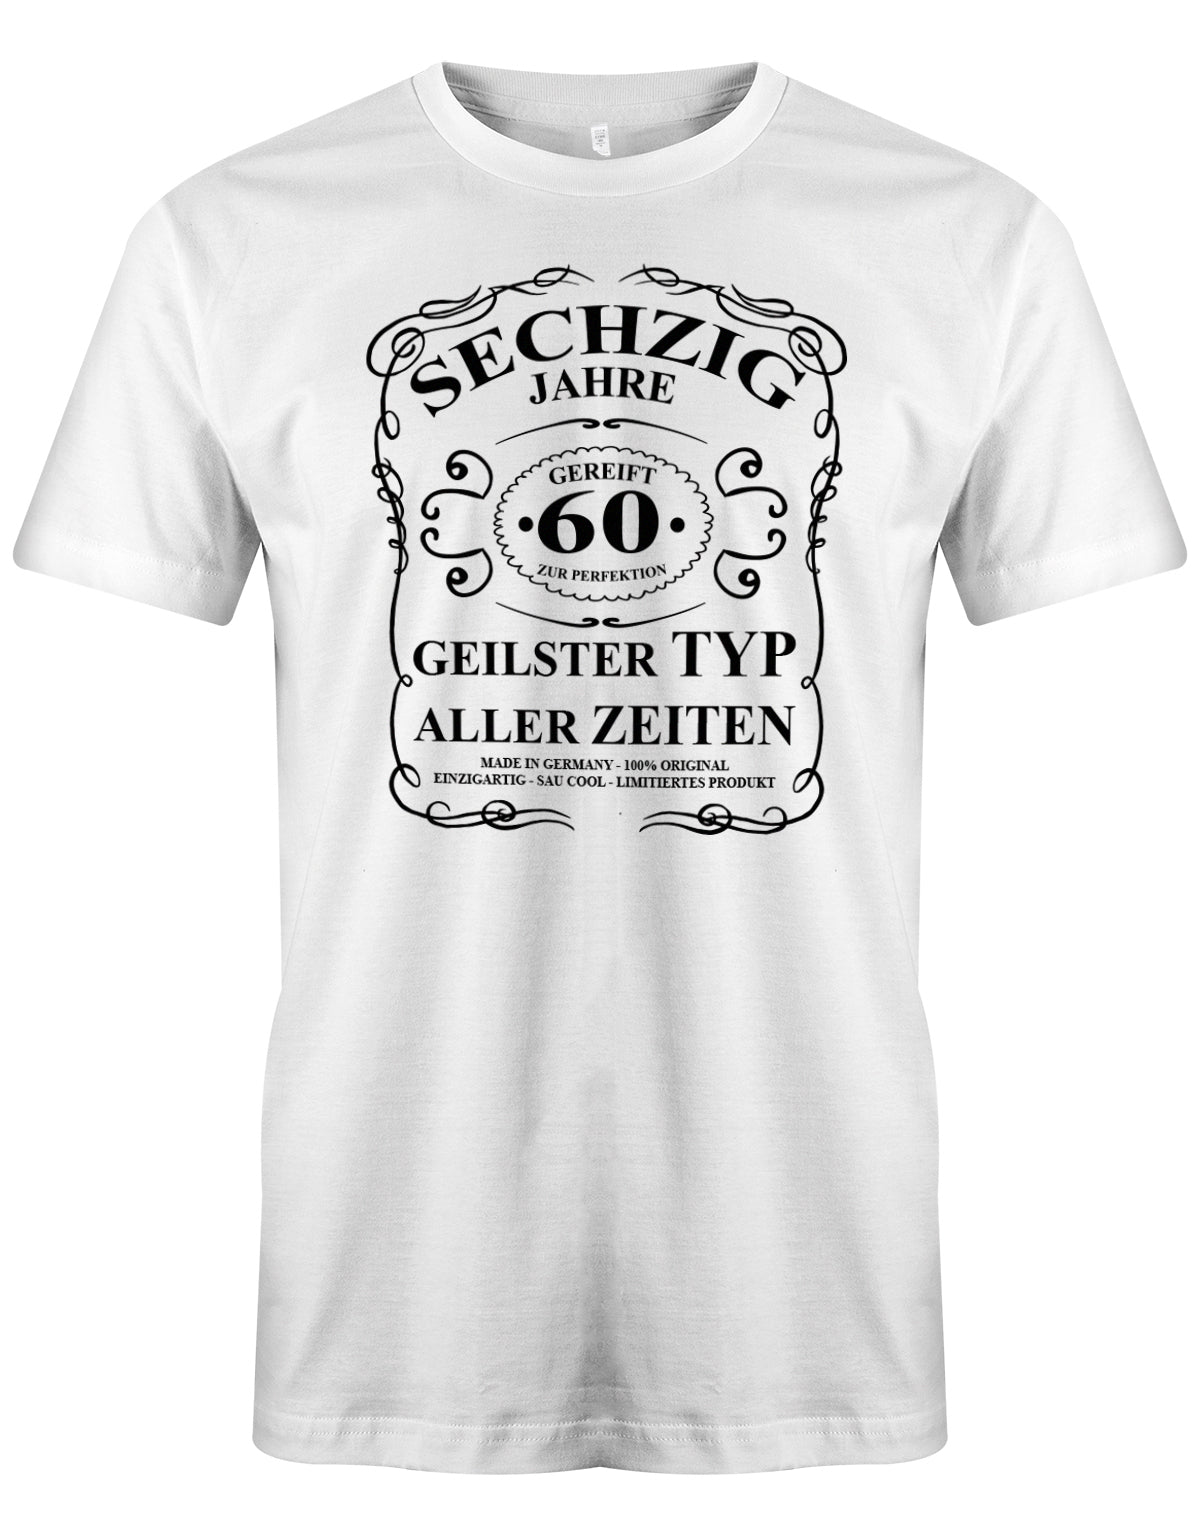 Lustiges T-Shirt zum 60. Geburtstag für den Mann Bedruckt mit fünfzig Jahre gereift zur Perfektion Geilster Typ aller Zeiten Made in Germany 100% Original Einzigartig Sau Cool Limitiertes Produkt. Weiss